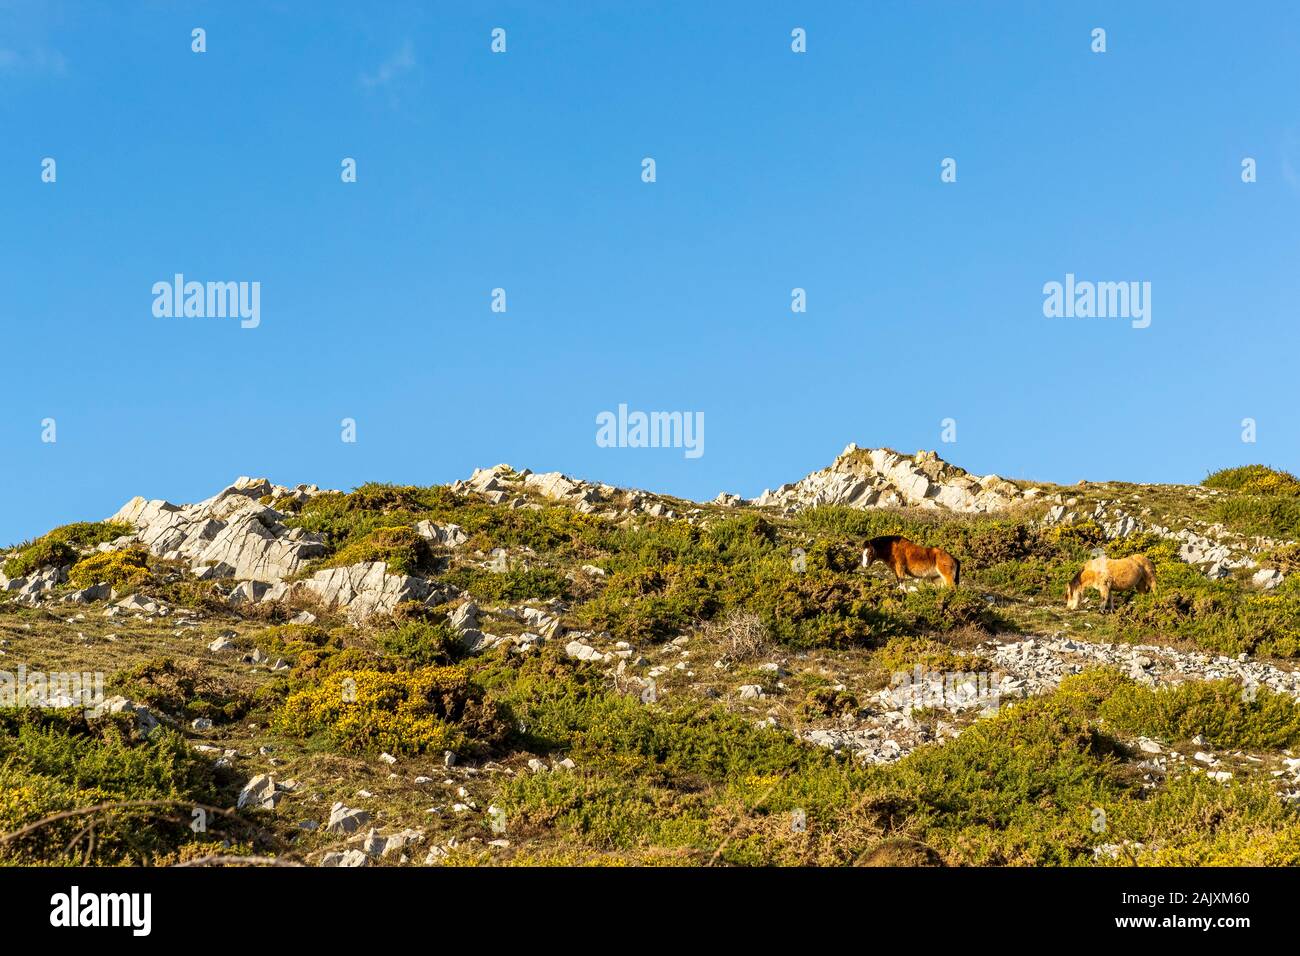 Conservación de pastoreo. Caballos mantenga presionada por el pastoreo scrub la reserva natural en Overton acantilado. Port Eynon, la Península de Gower, Wales Foto de stock